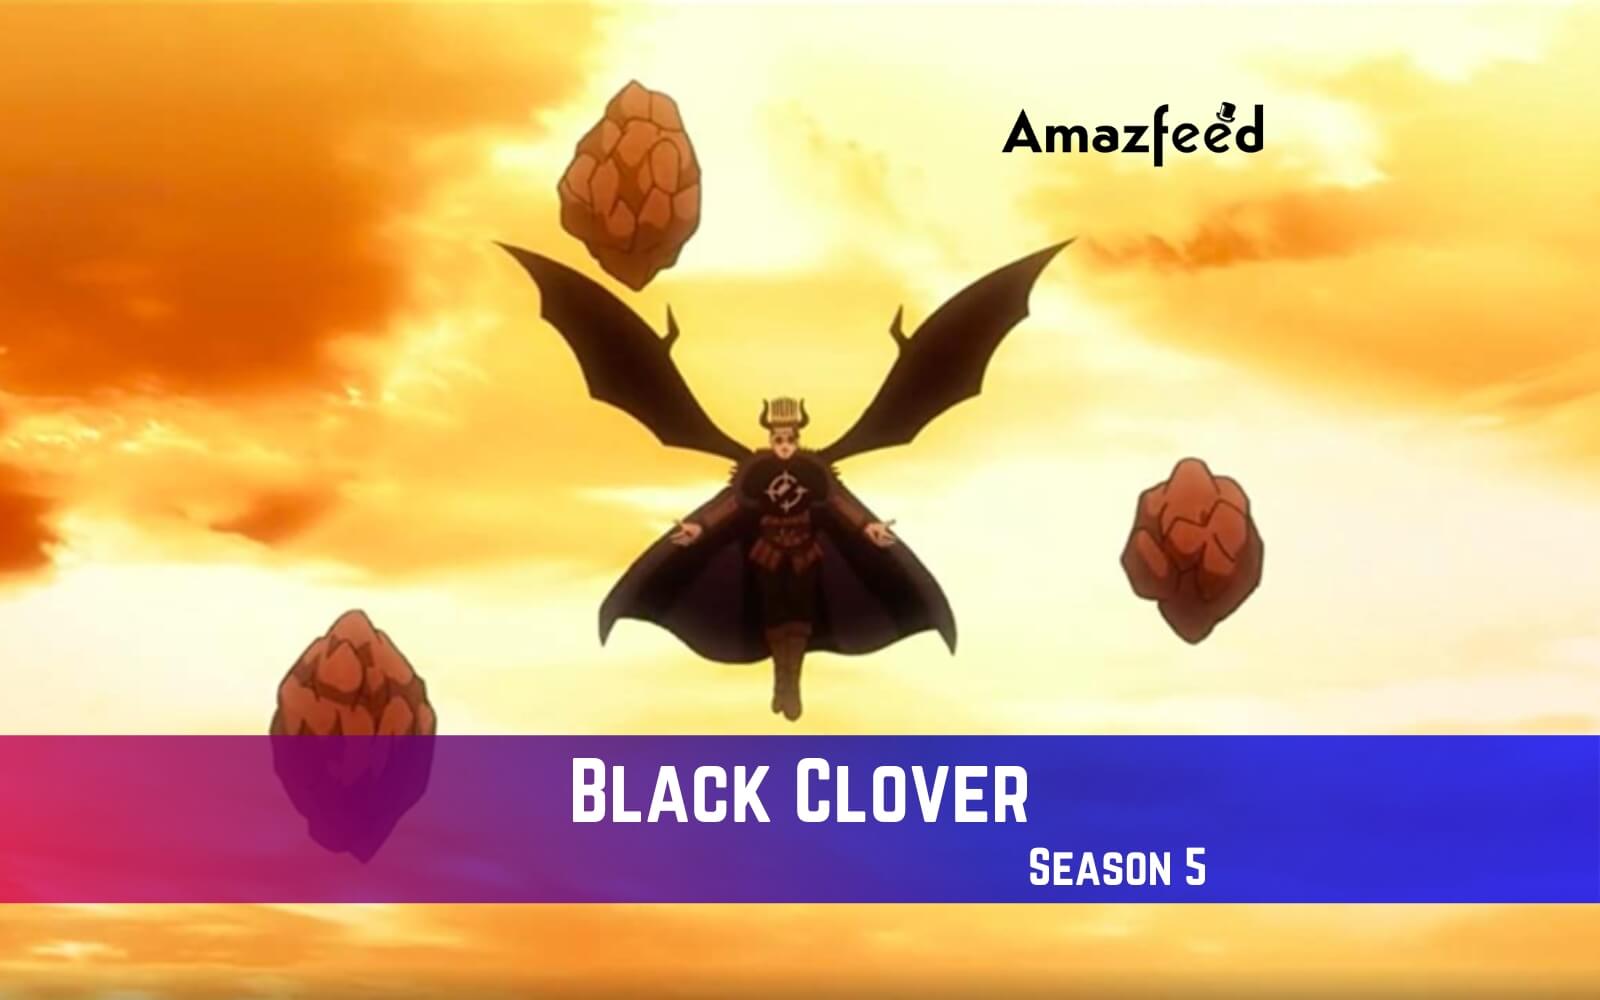 Black Clover Season 5 Release Date Confirmed in Winter 2023